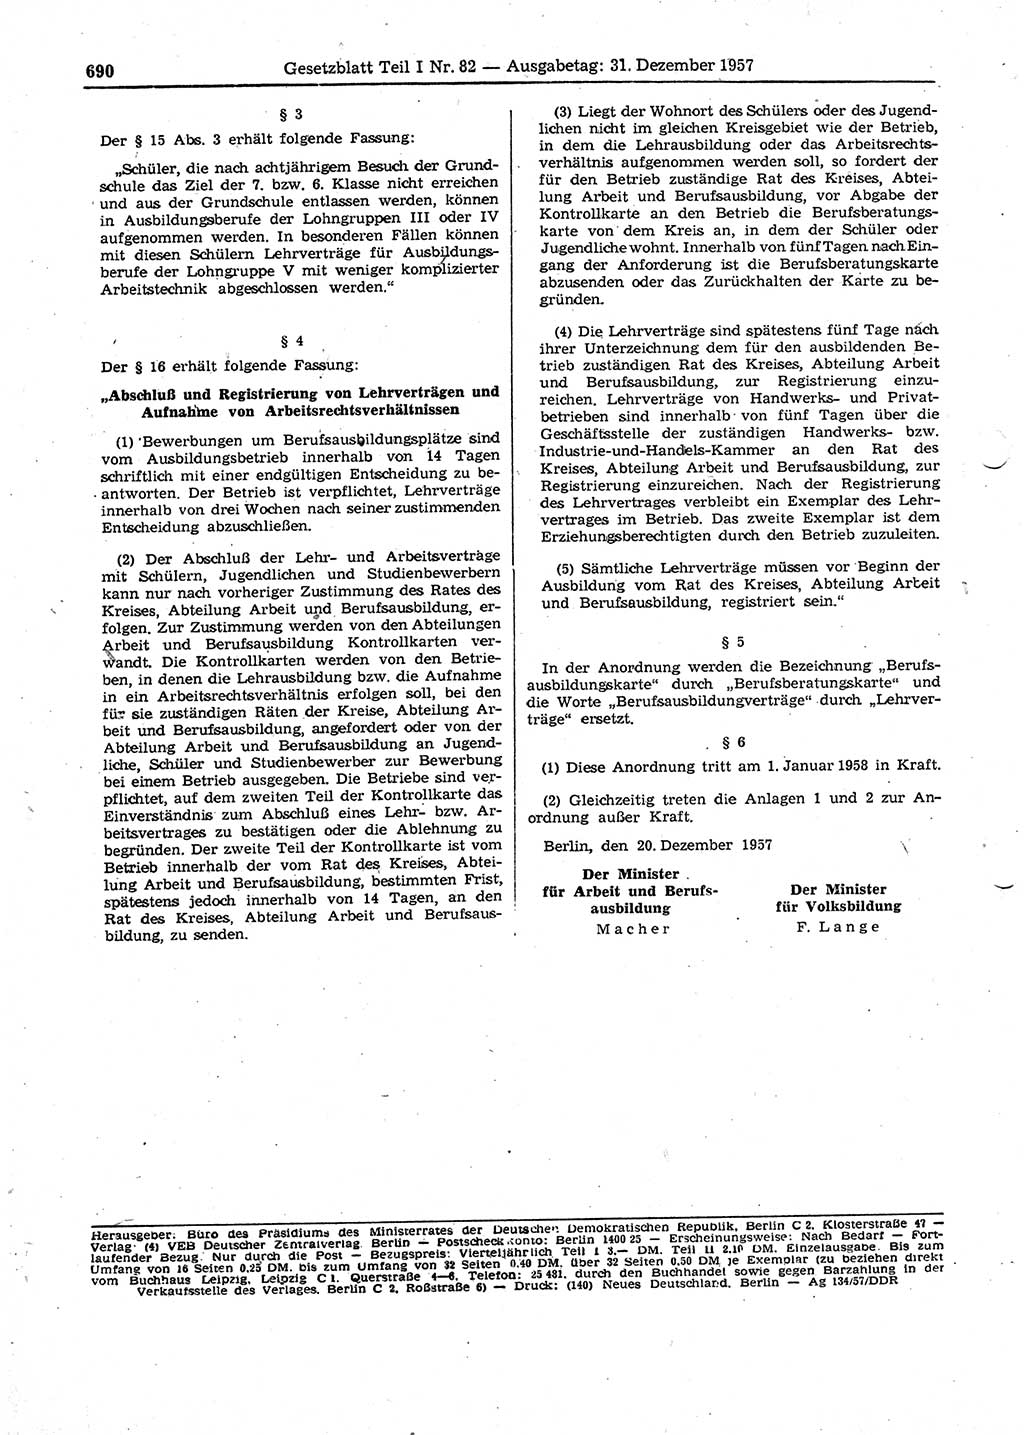 Gesetzblatt (GBl.) der Deutschen Demokratischen Republik (DDR) Teil Ⅰ 1957, Seite 690 (GBl. DDR Ⅰ 1957, S. 690)